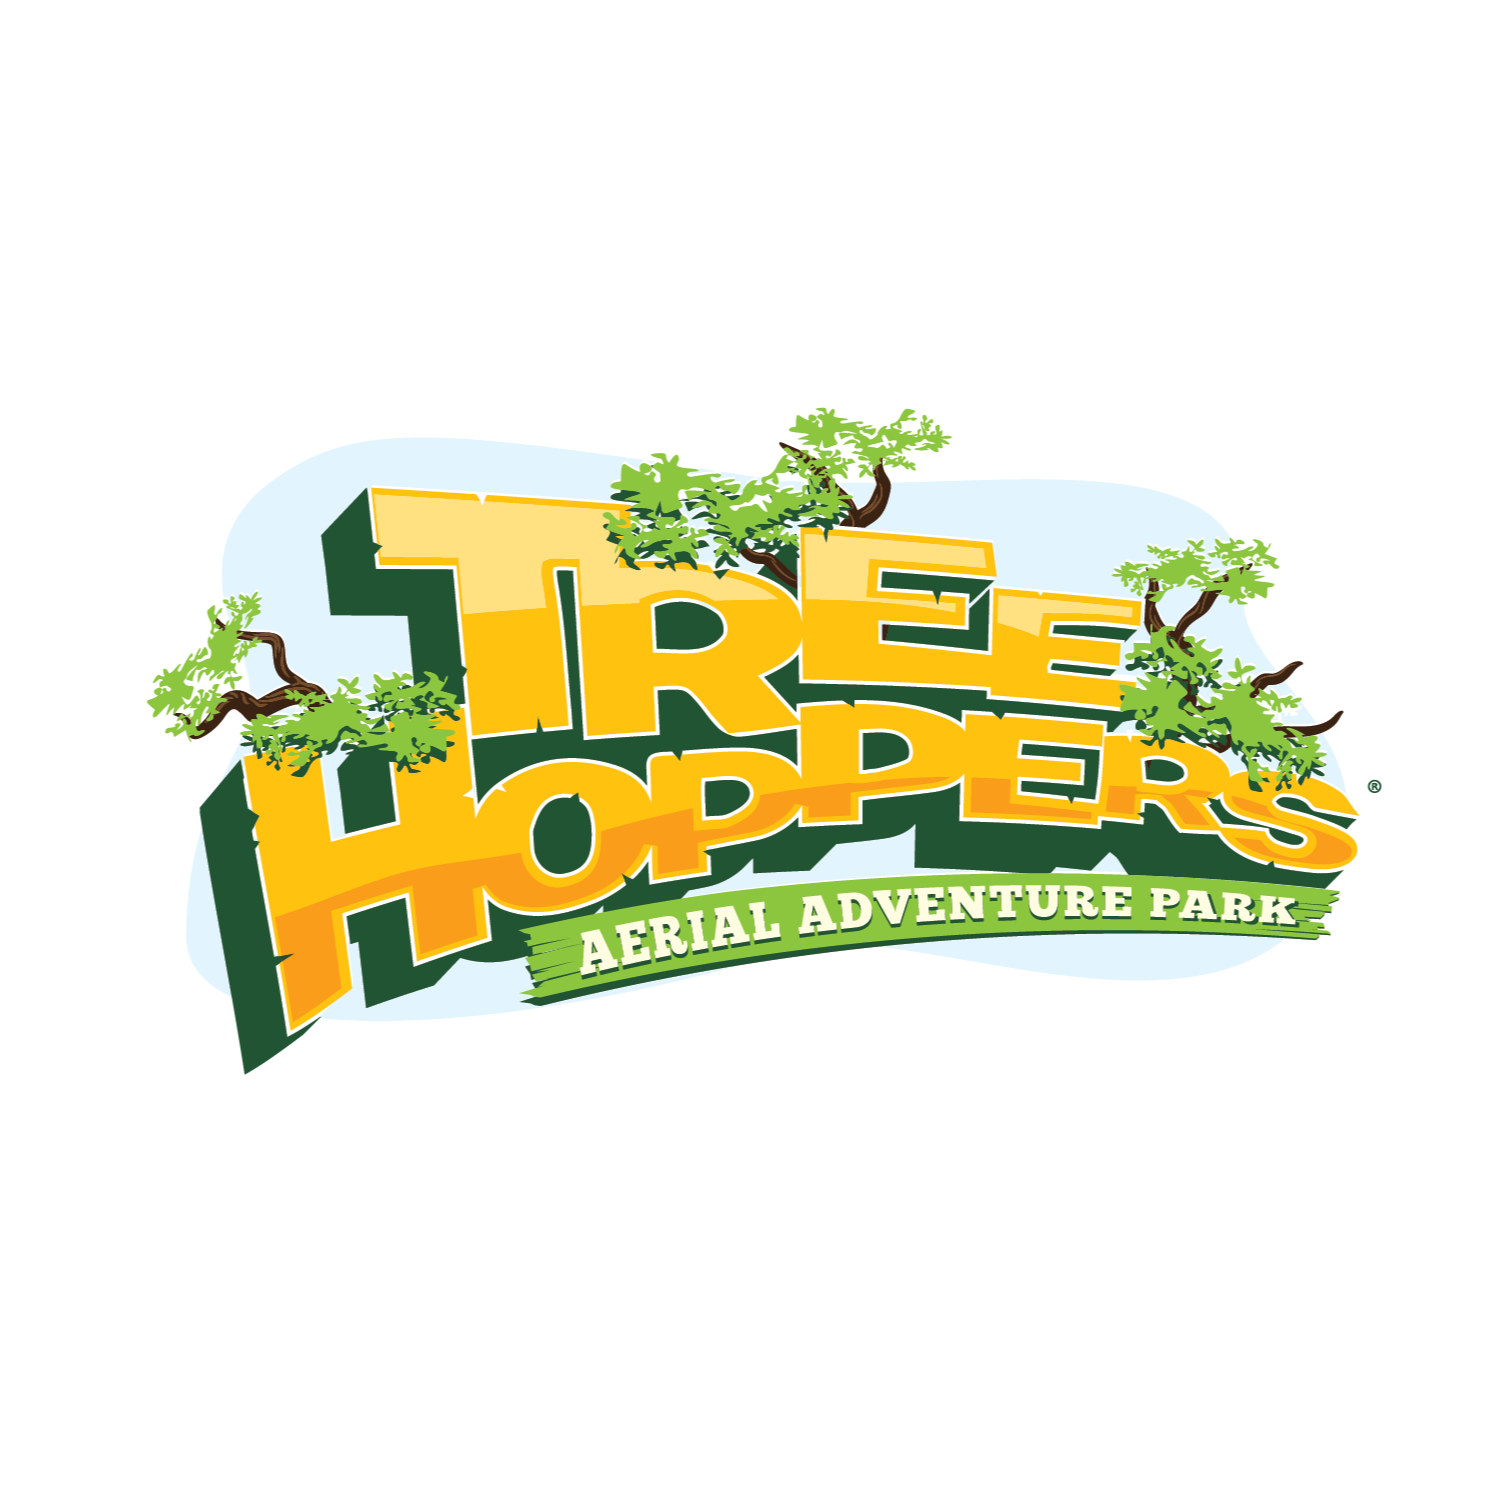 TreeHoppers Aerial Adventure Park - Dade City, FL 33525 - (813)381-5400 | ShowMeLocal.com